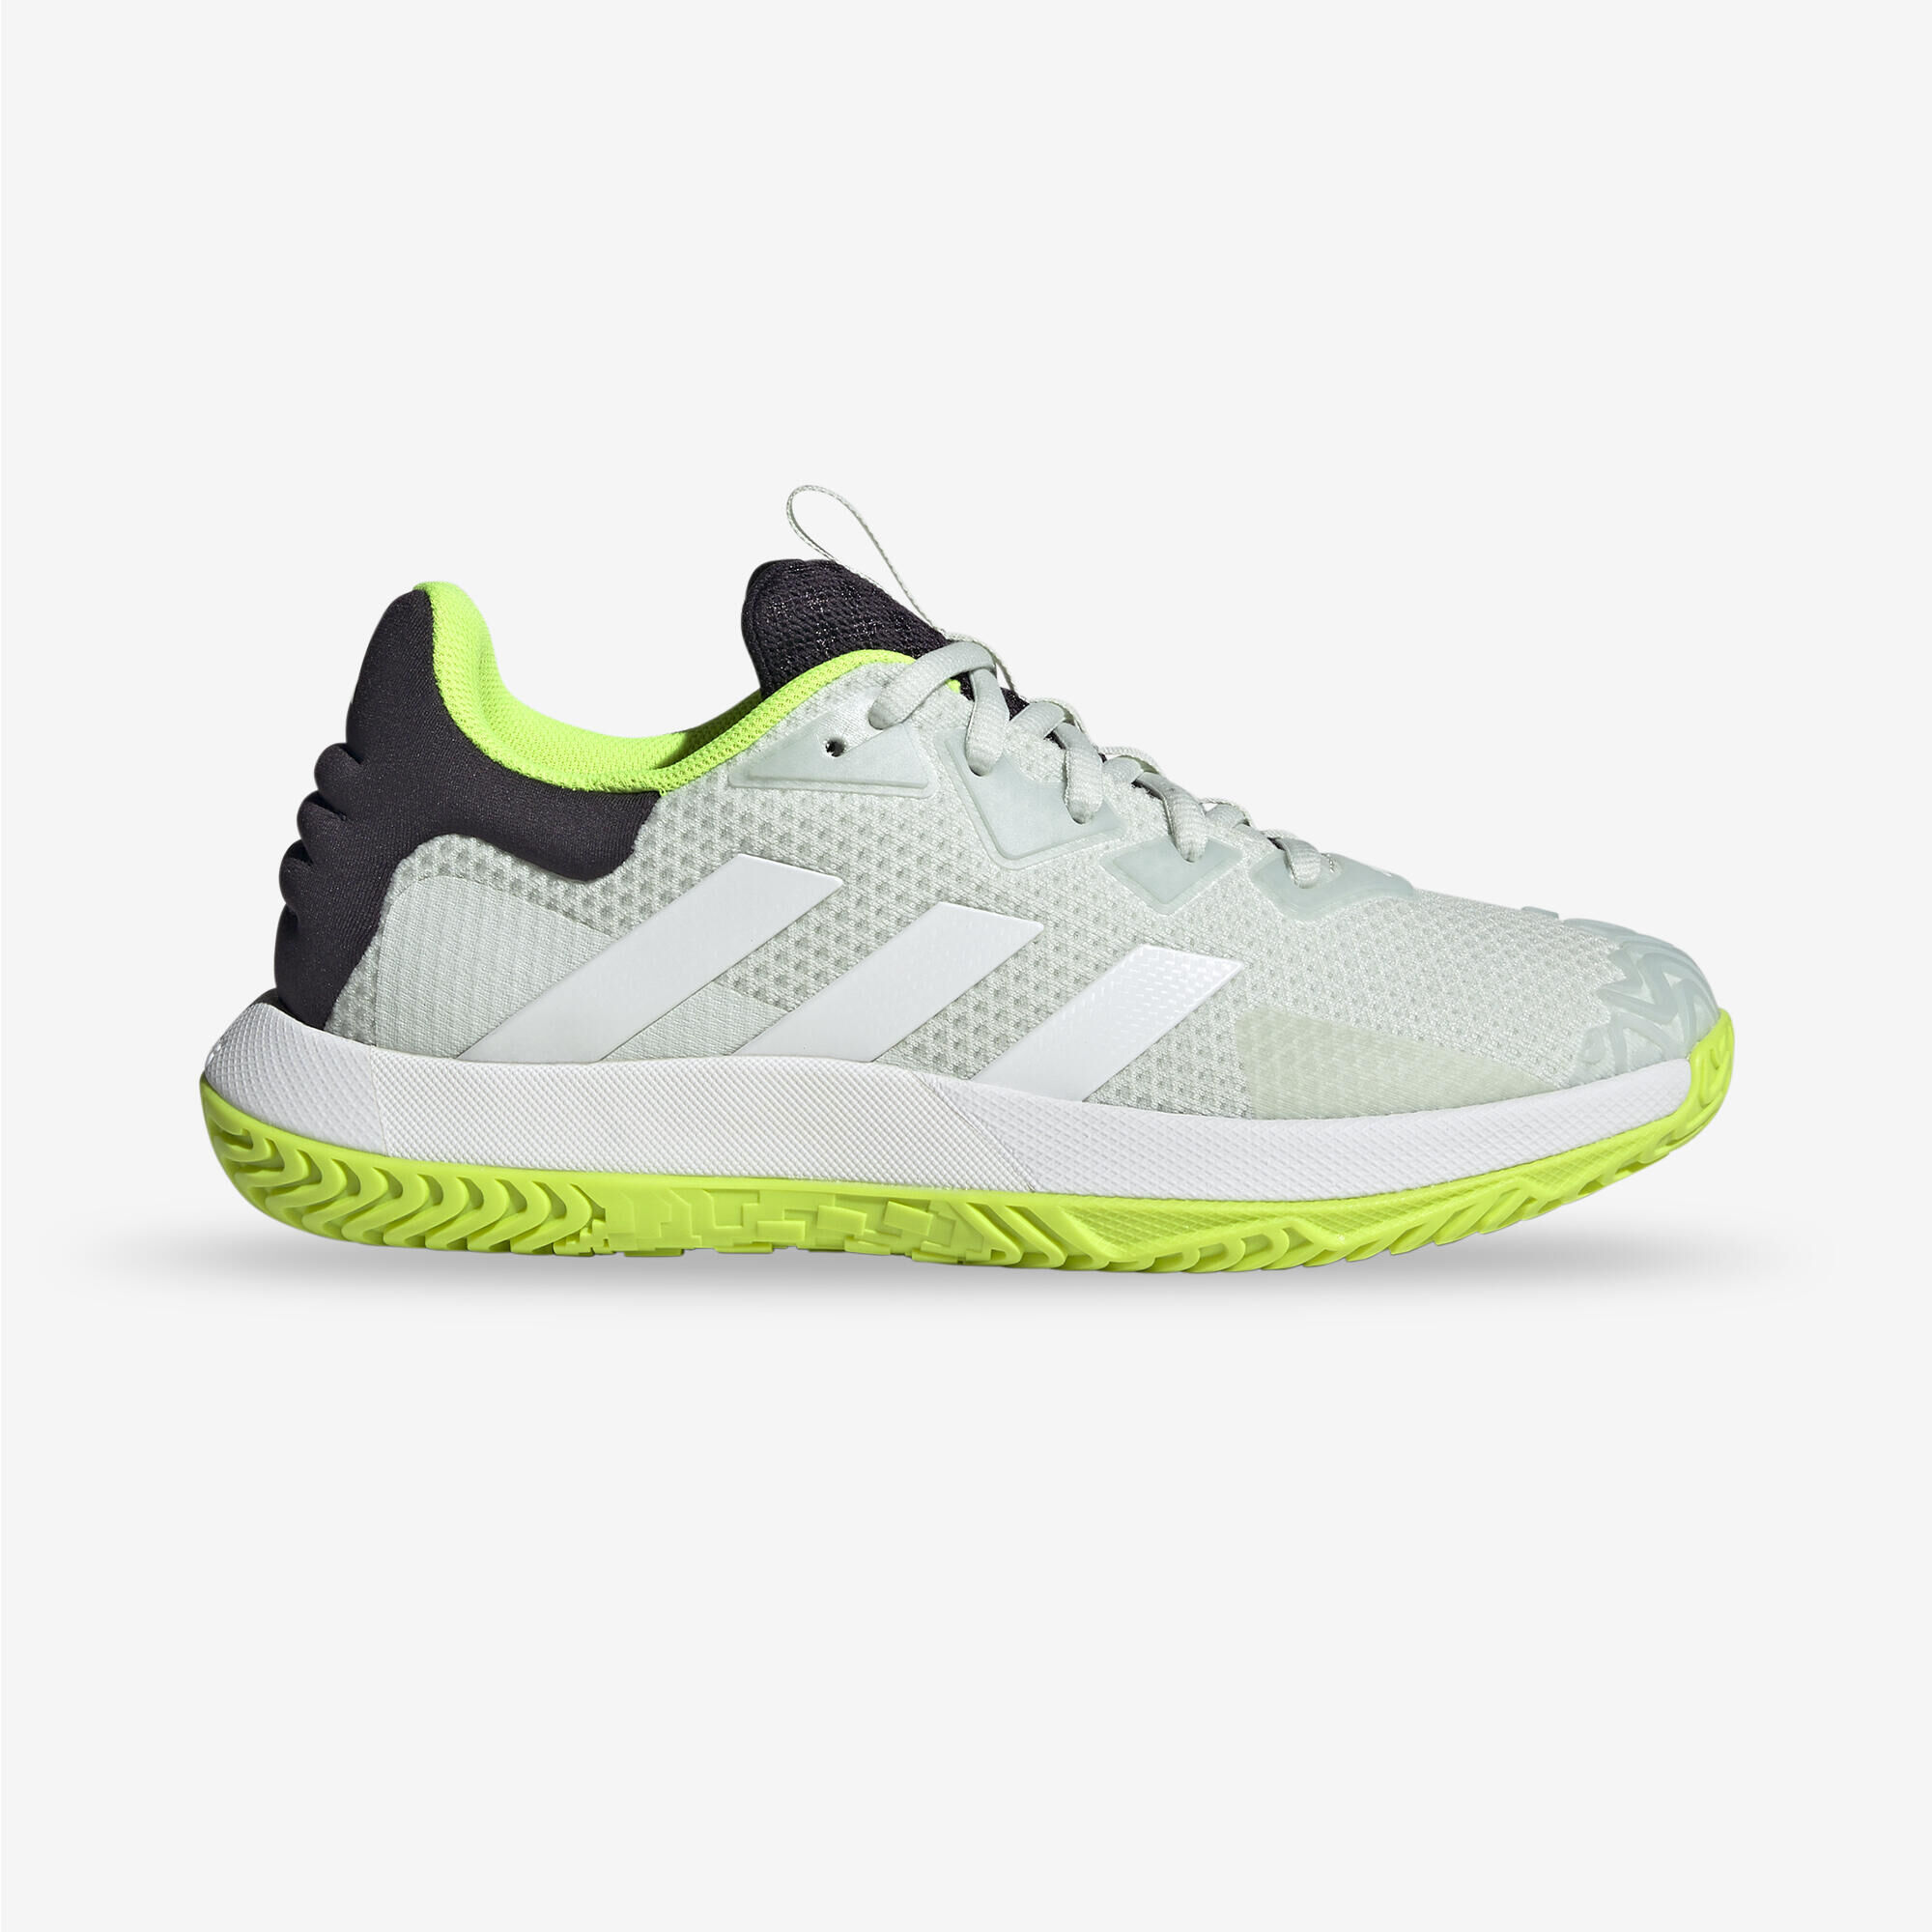 ADIDAS Men's Multicourt Tennis Shoes Solematch Control - Lucid Lemon